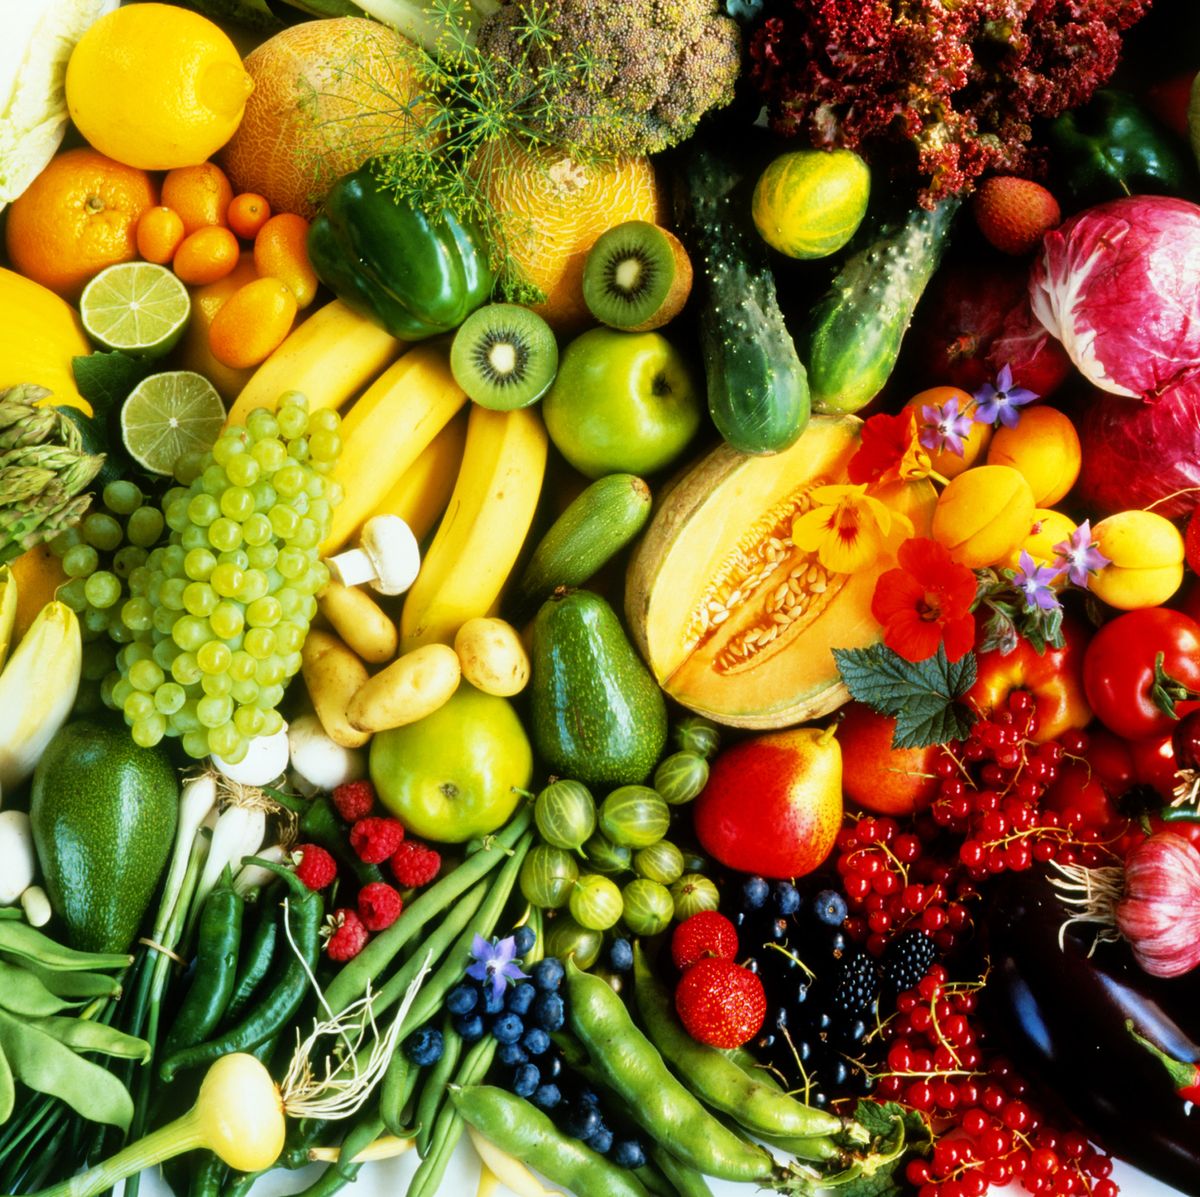 Assorted fruit & vegetables